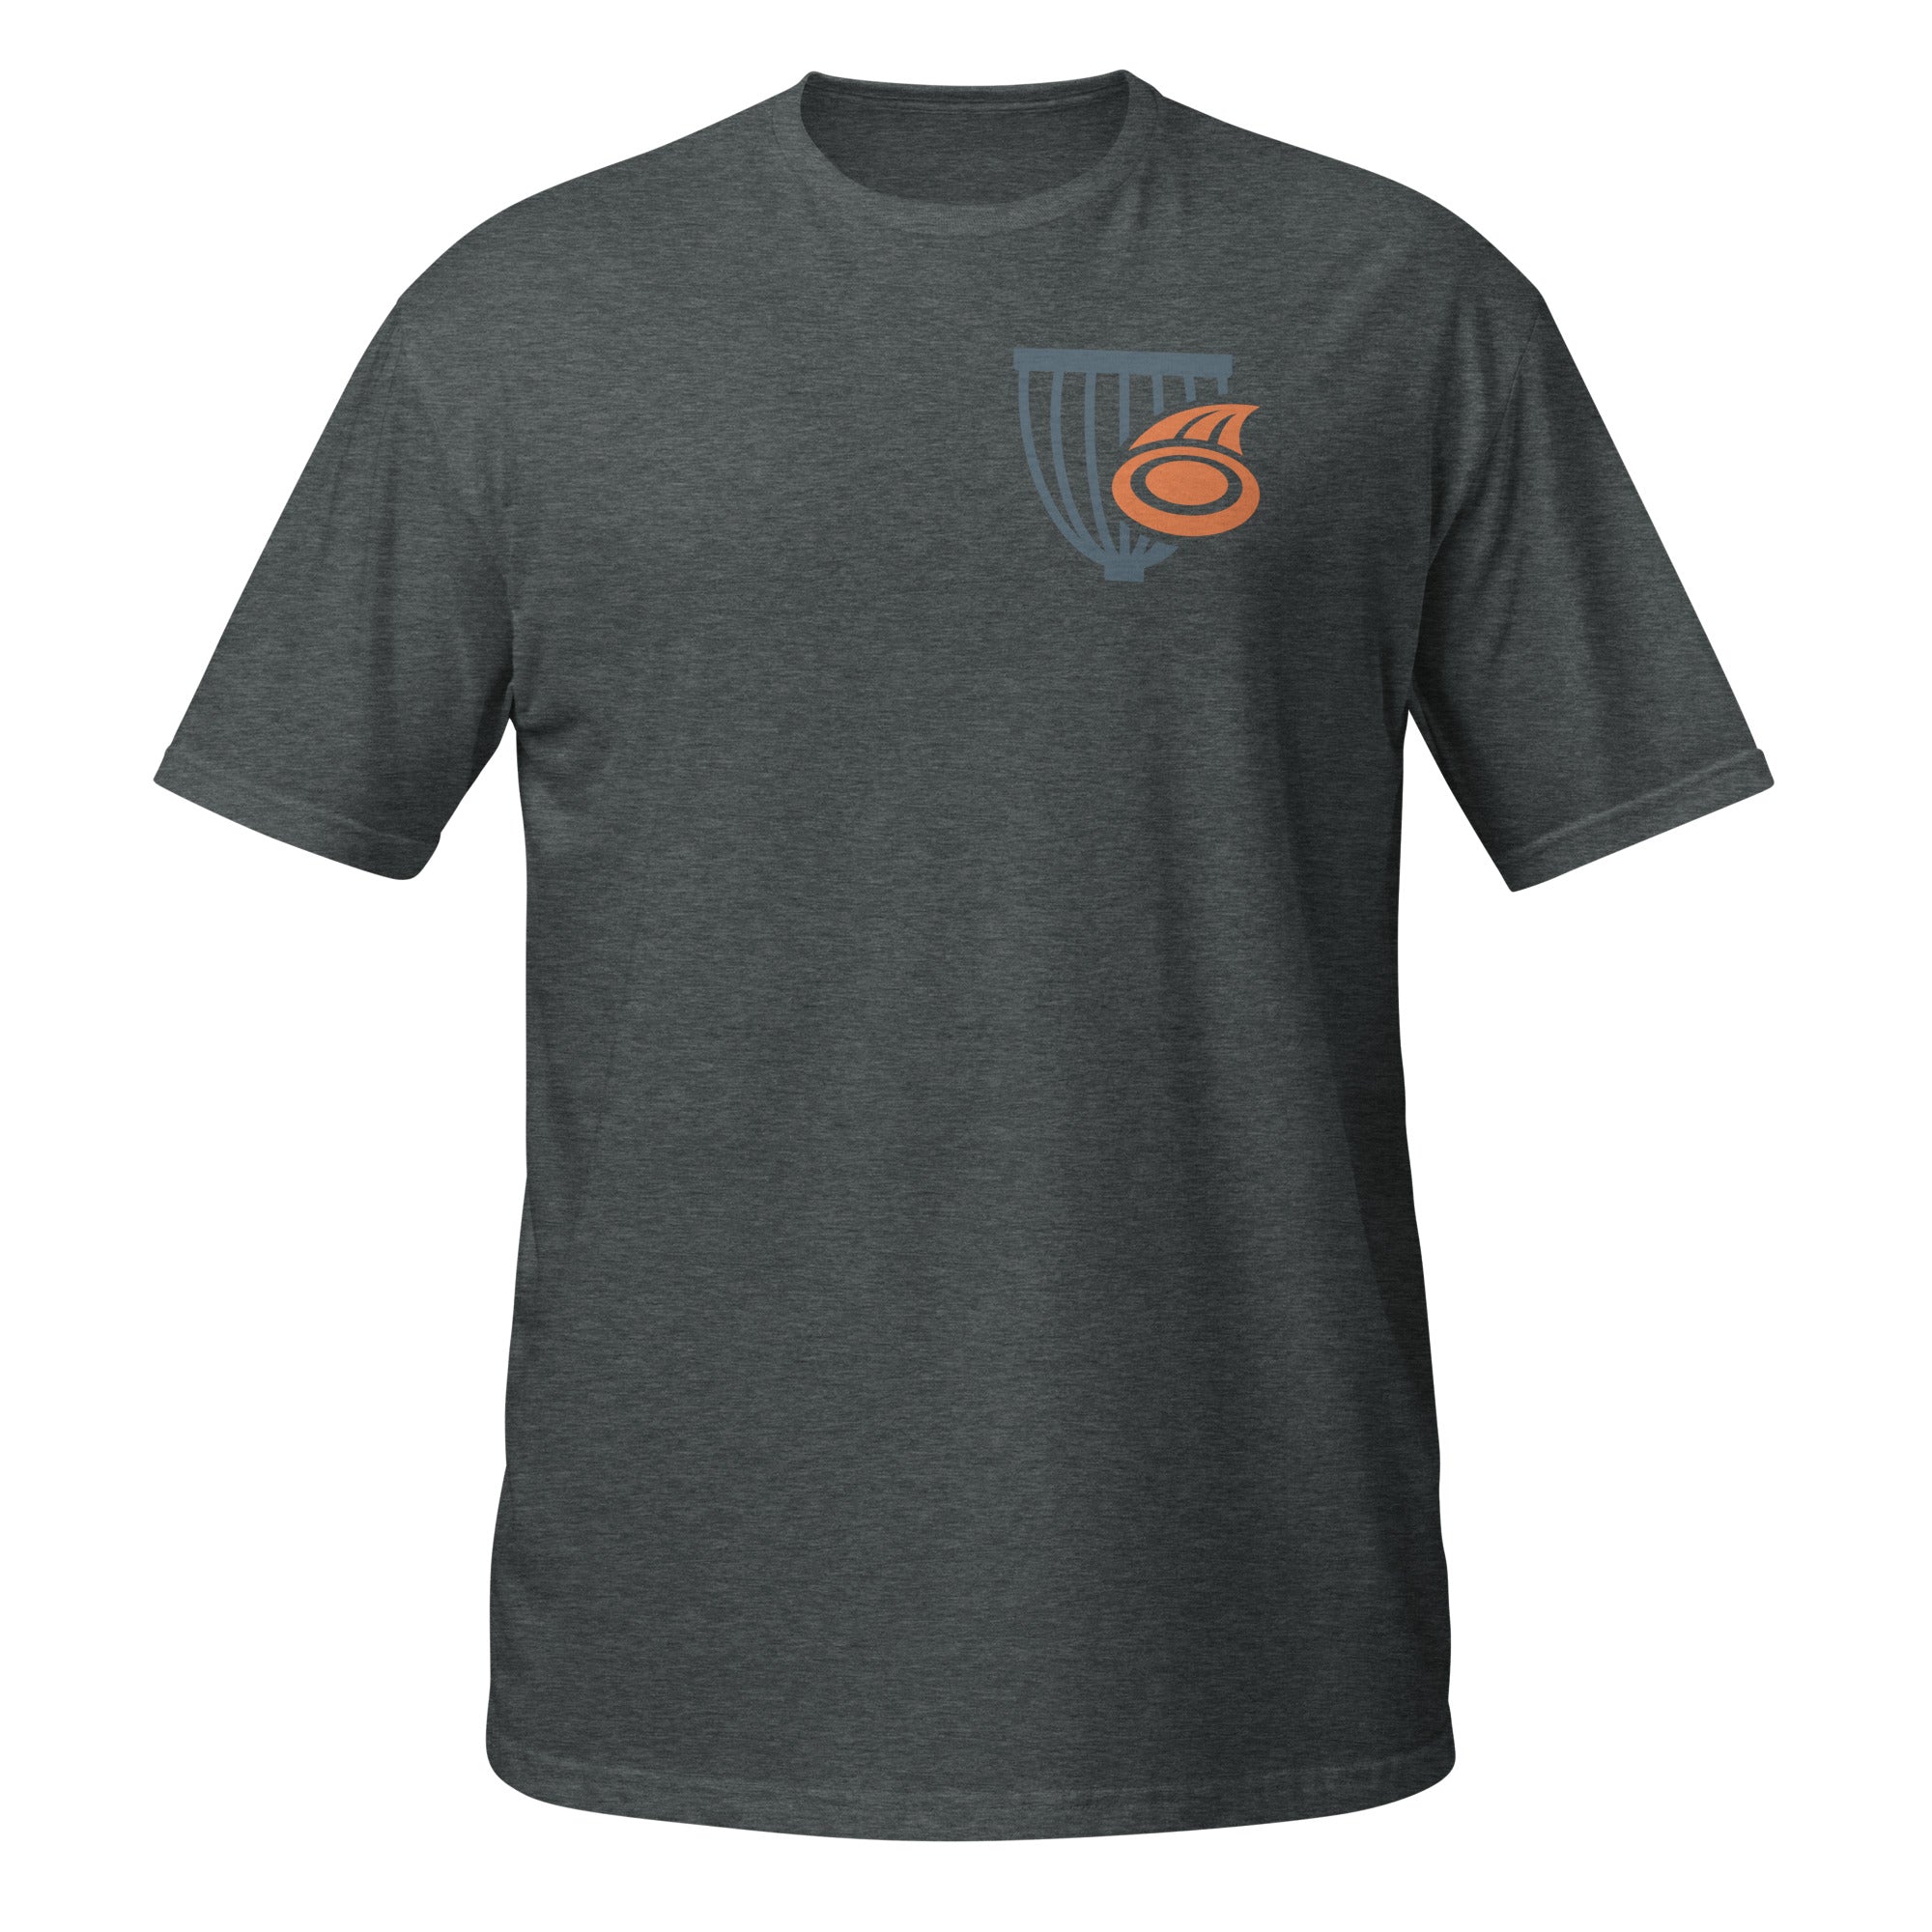 The Disc Depot Short-Sleeve Unisex T-Shirt